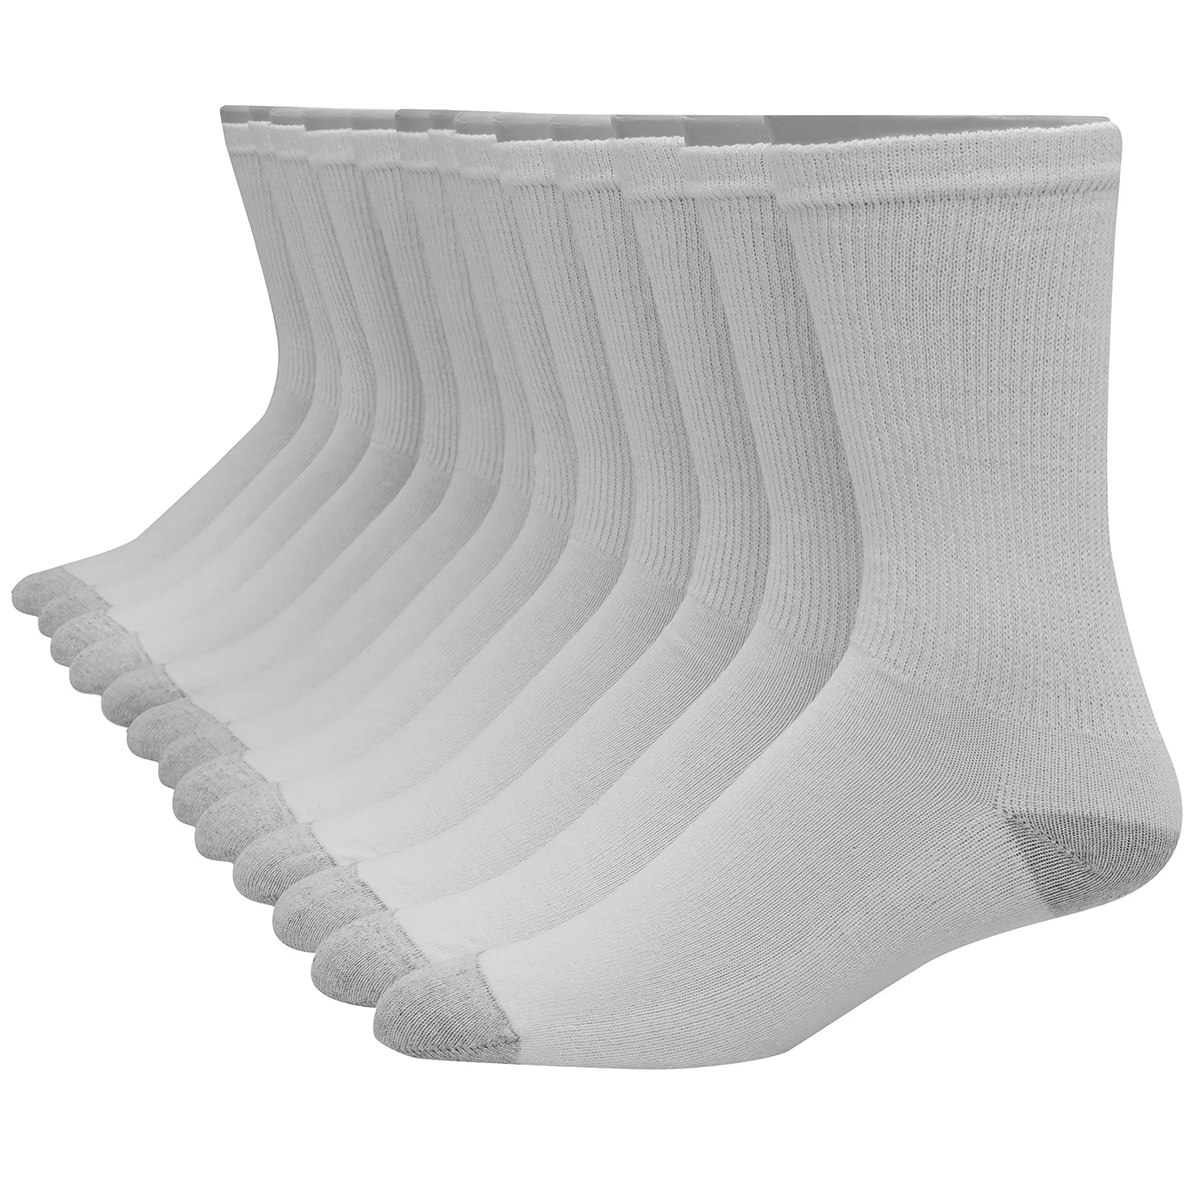 Hanes Men's Ultimate Big & Tall Crew Socks, 10-Pack